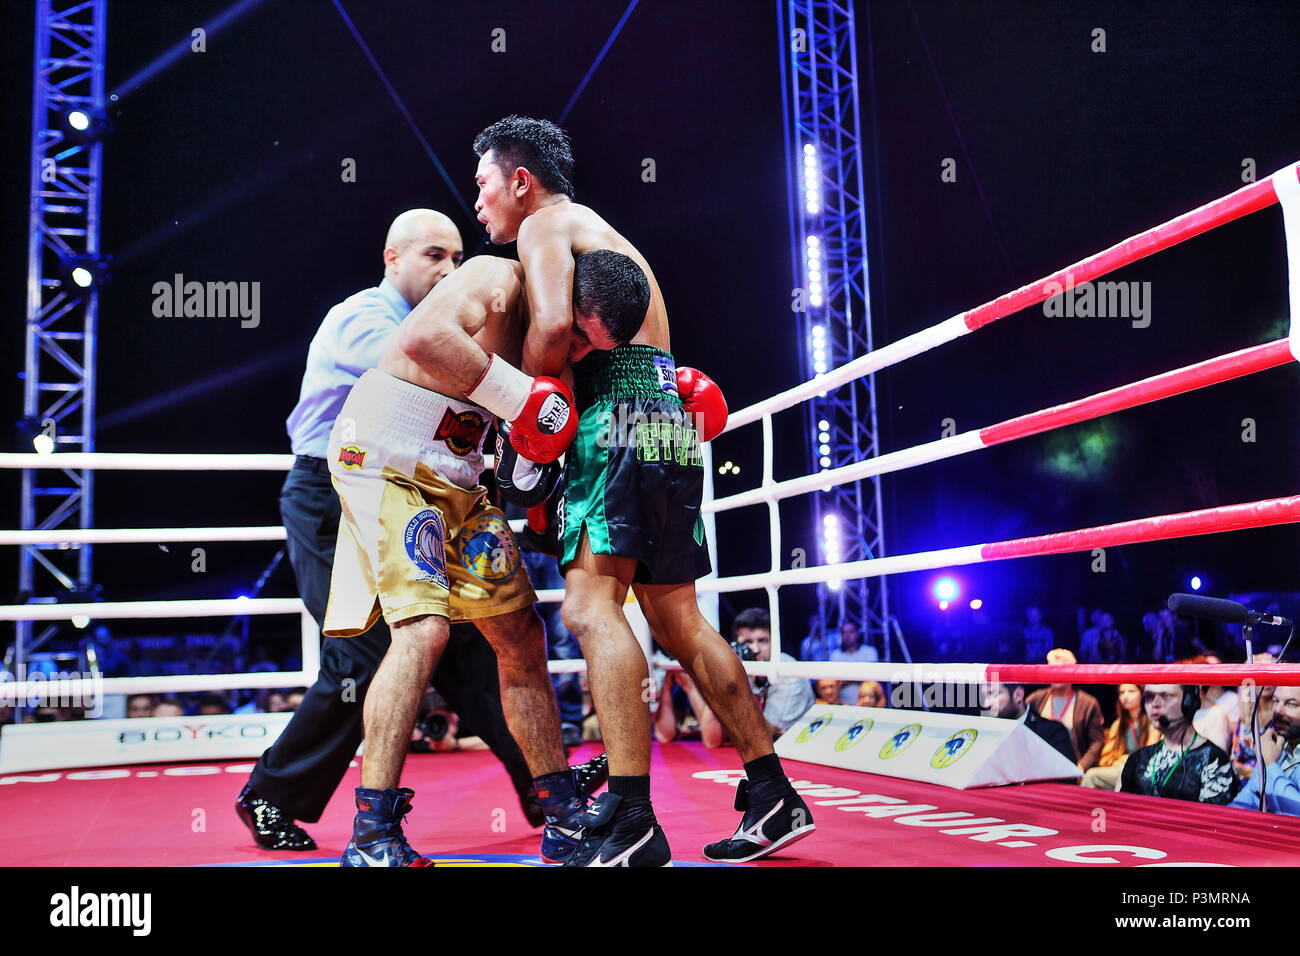 Pro boxer Sirichai Thaiyen dalla Tailandia strangola tenendo la WBA pesi mosca champ Artem Dalakian dall'Ucraina che ha vinto il titolo di lotta a Kiev 17.06.18 TKO8 Foto Stock